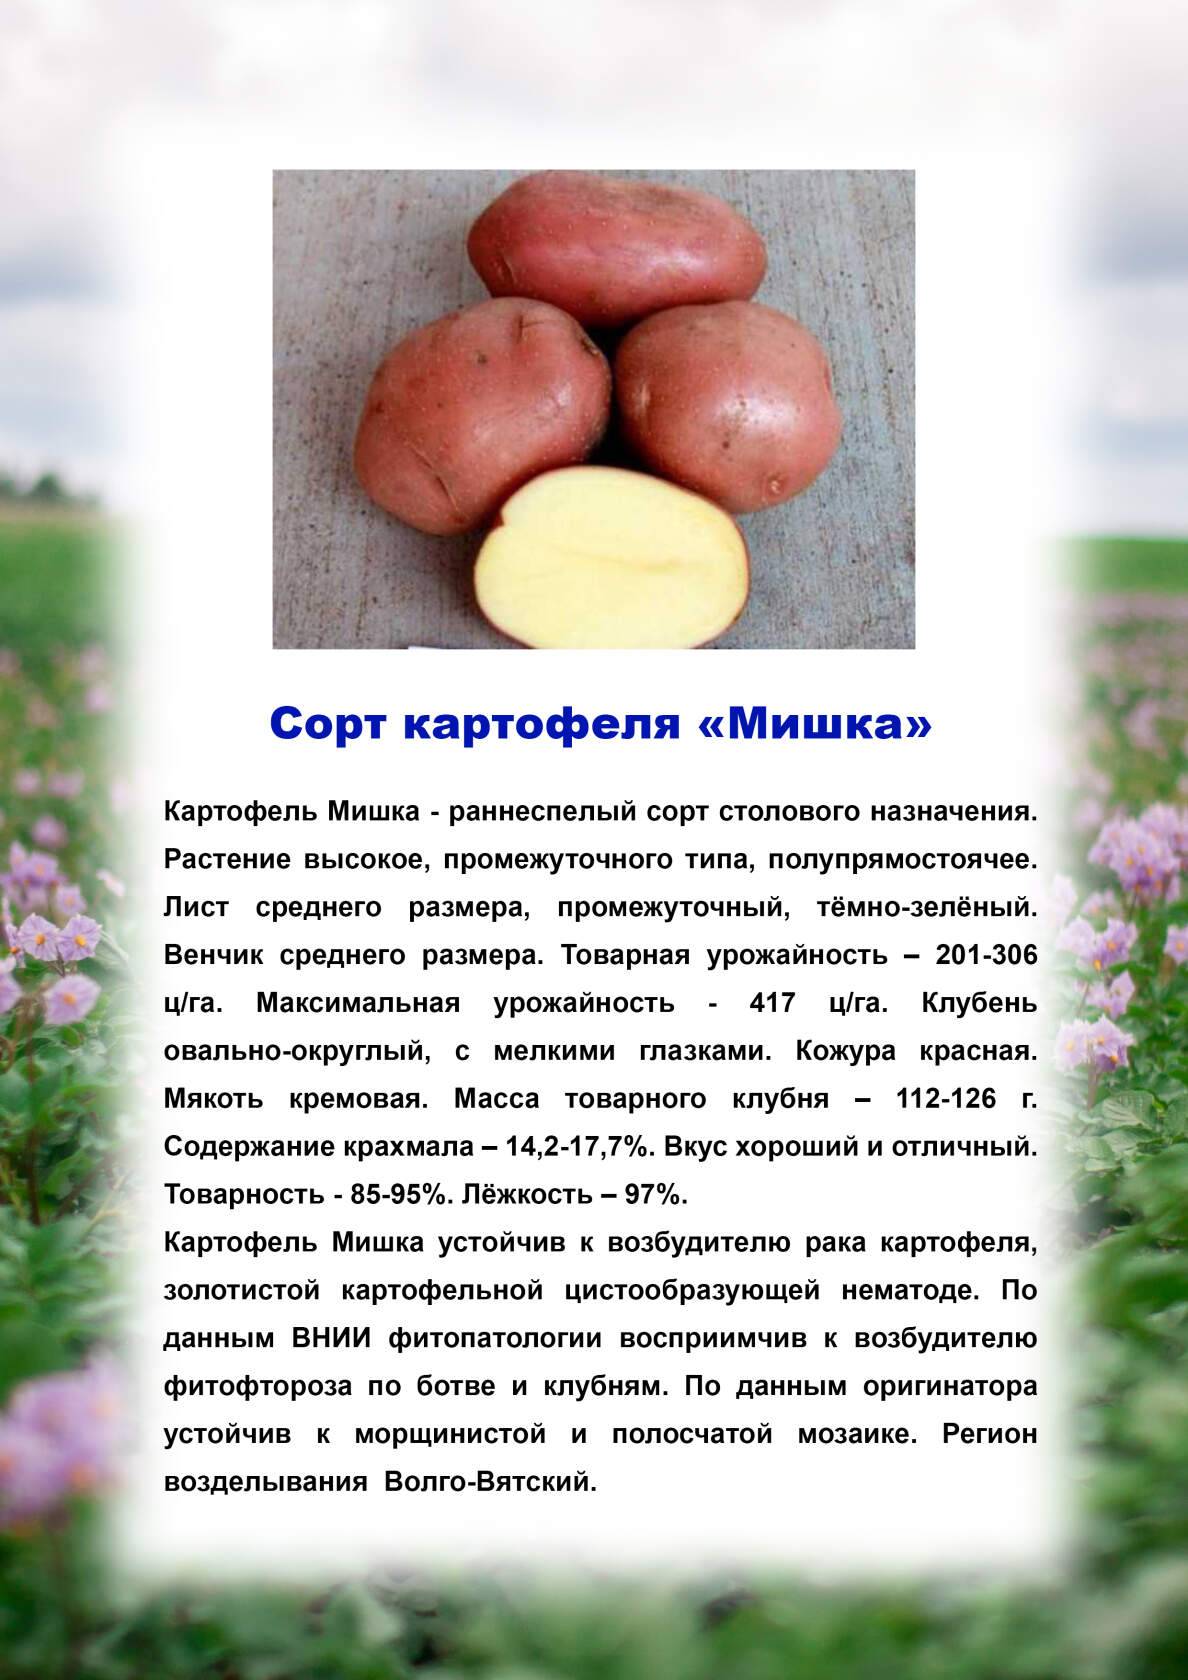 Картофель гулливер: описание сорта, фото, характеристика